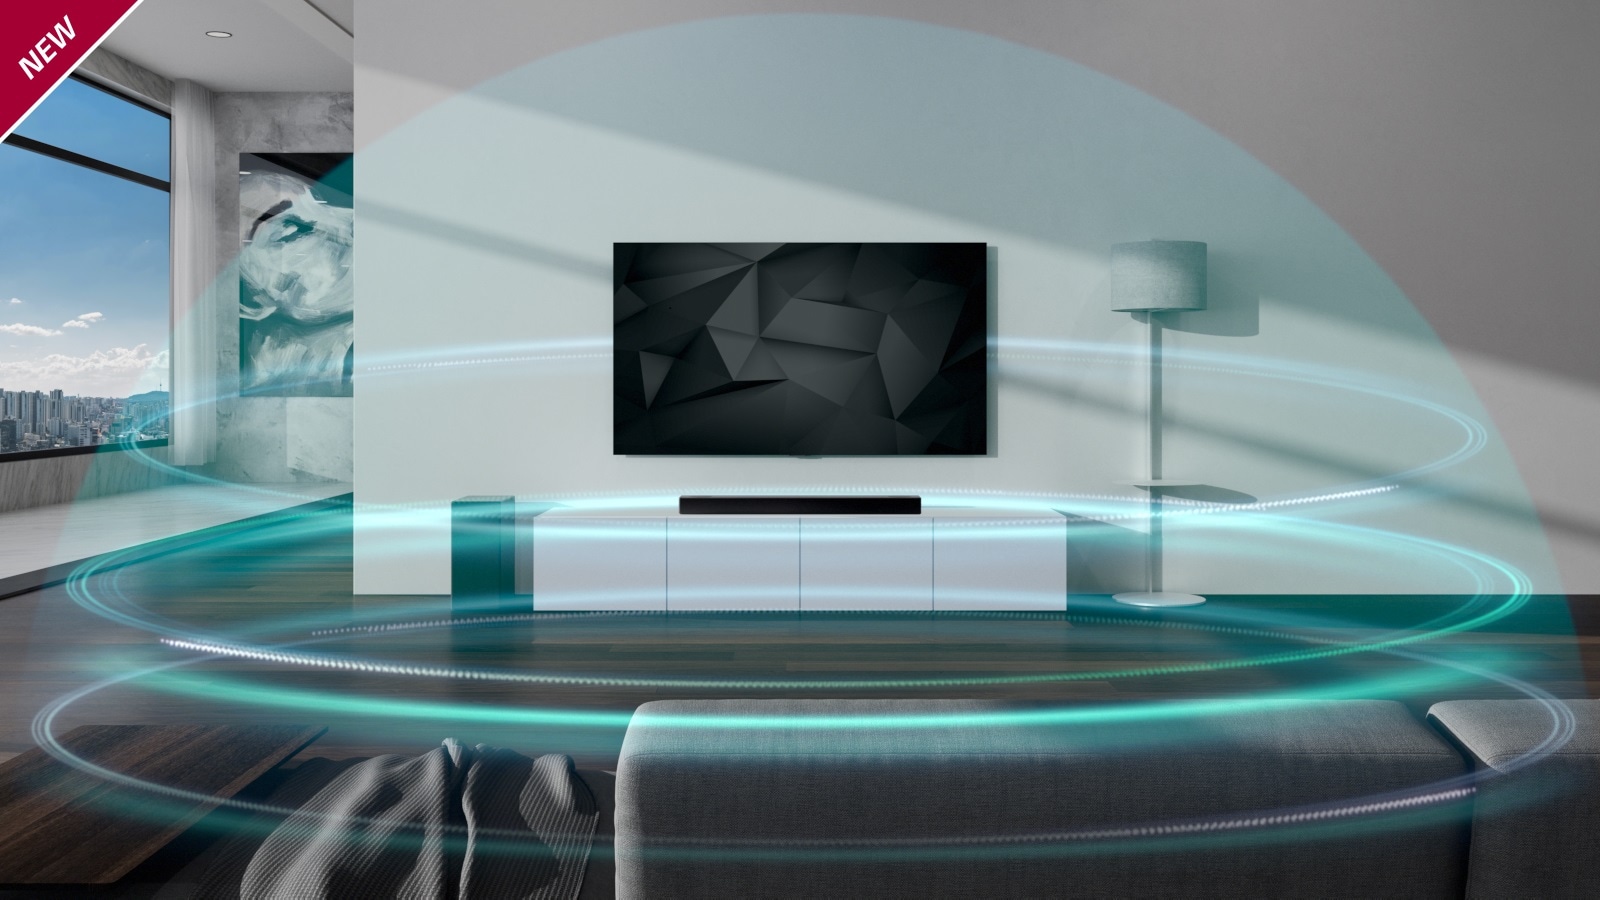 Μπλε θολωτά, 3 στρωμάτων ηχητικά κύματα καλύπτουν το Sound Bar και την τηλεόραση στο σαλόνι. Το σήμα NEW εμφανίζεται στην επάνω αριστερή γωνία.